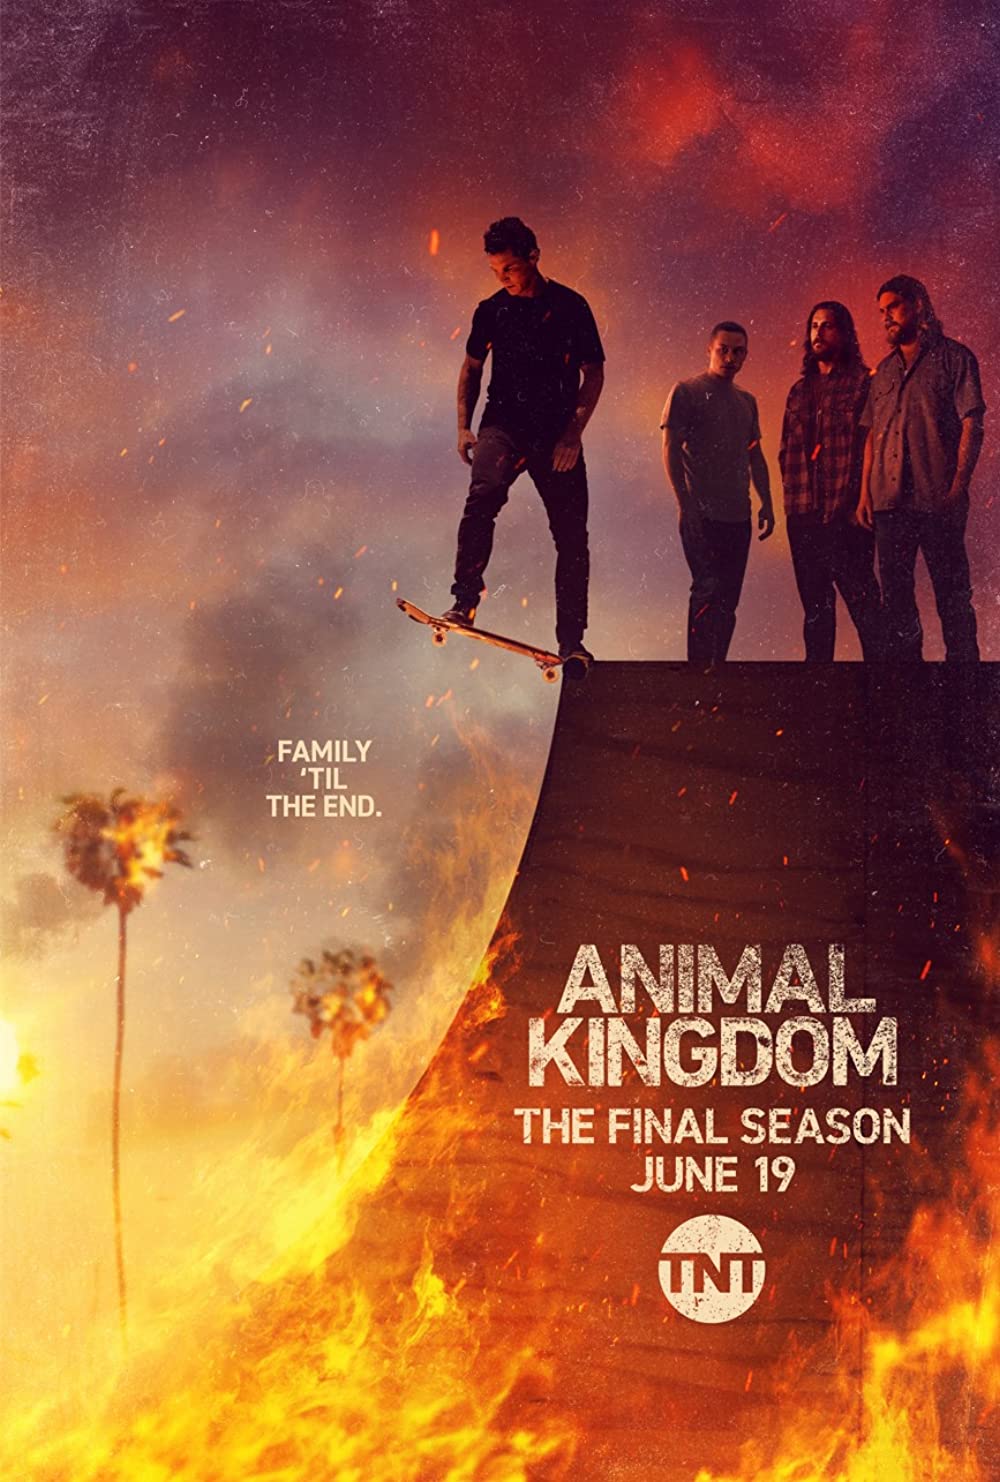 ดูหนังออนไลน์ฟรี Animal Kingdom Season 1 EP.3 แอนนิเมิล คิงด้อม ซีซั่น 1 ตอนที่ 3 (ซับไทย)